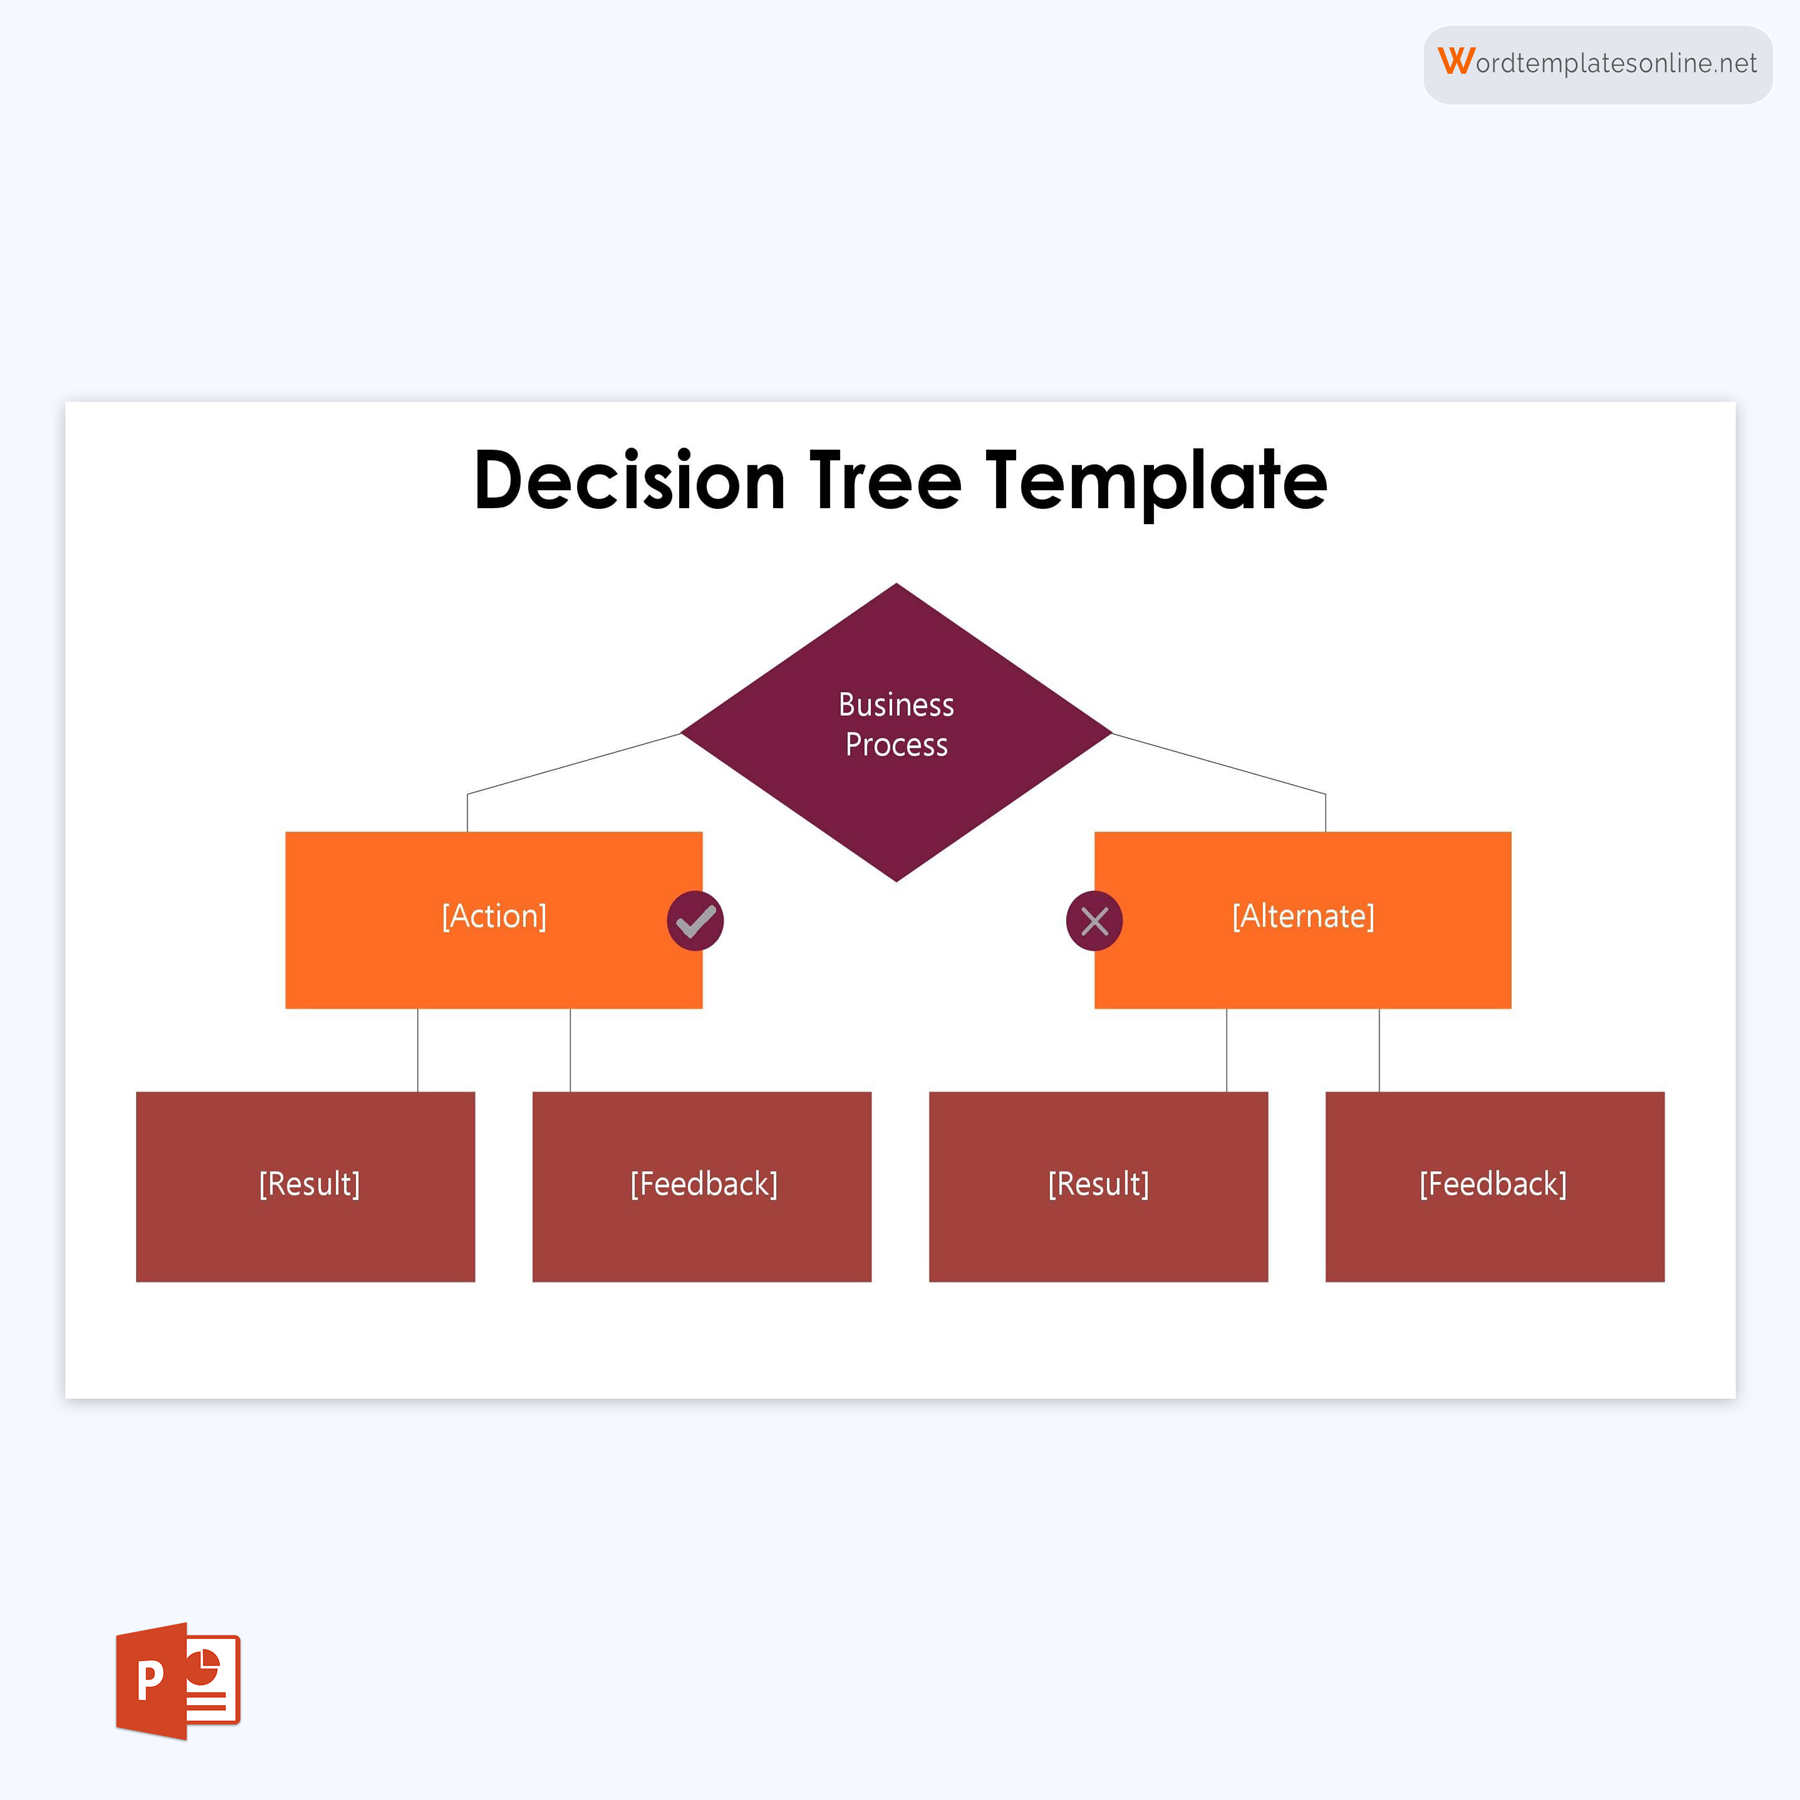 Decision Tree Template - Free Sample & Editable